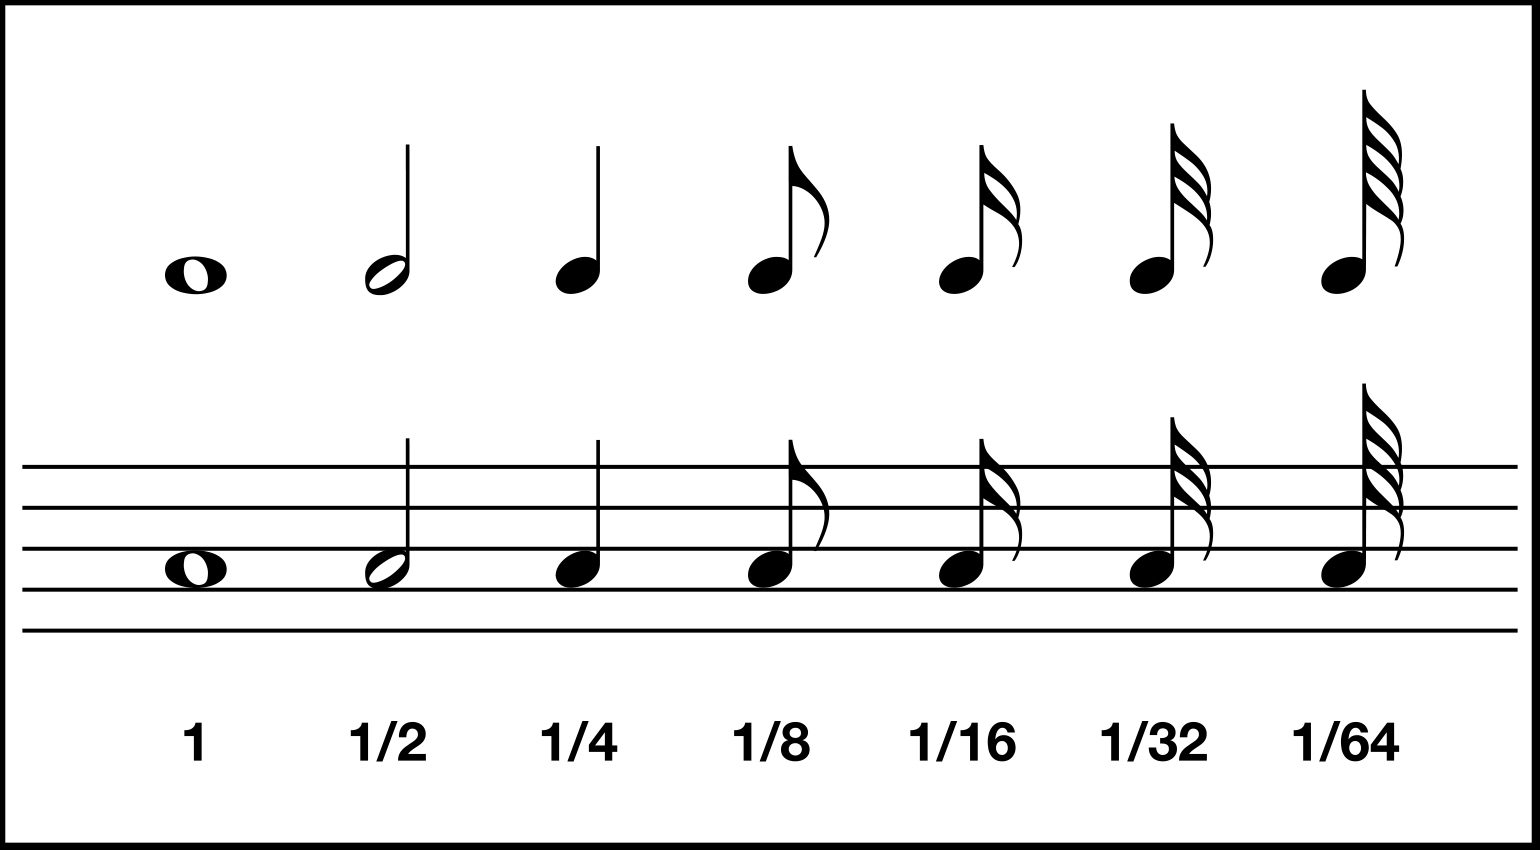 Valori delle note come vengono rappresentati nella notazione tradizionale. Il valore più a sinistra rappresenta il valore di una battuta intera, quello più a destra il valore della nota più breve che possa essere rappresentata.